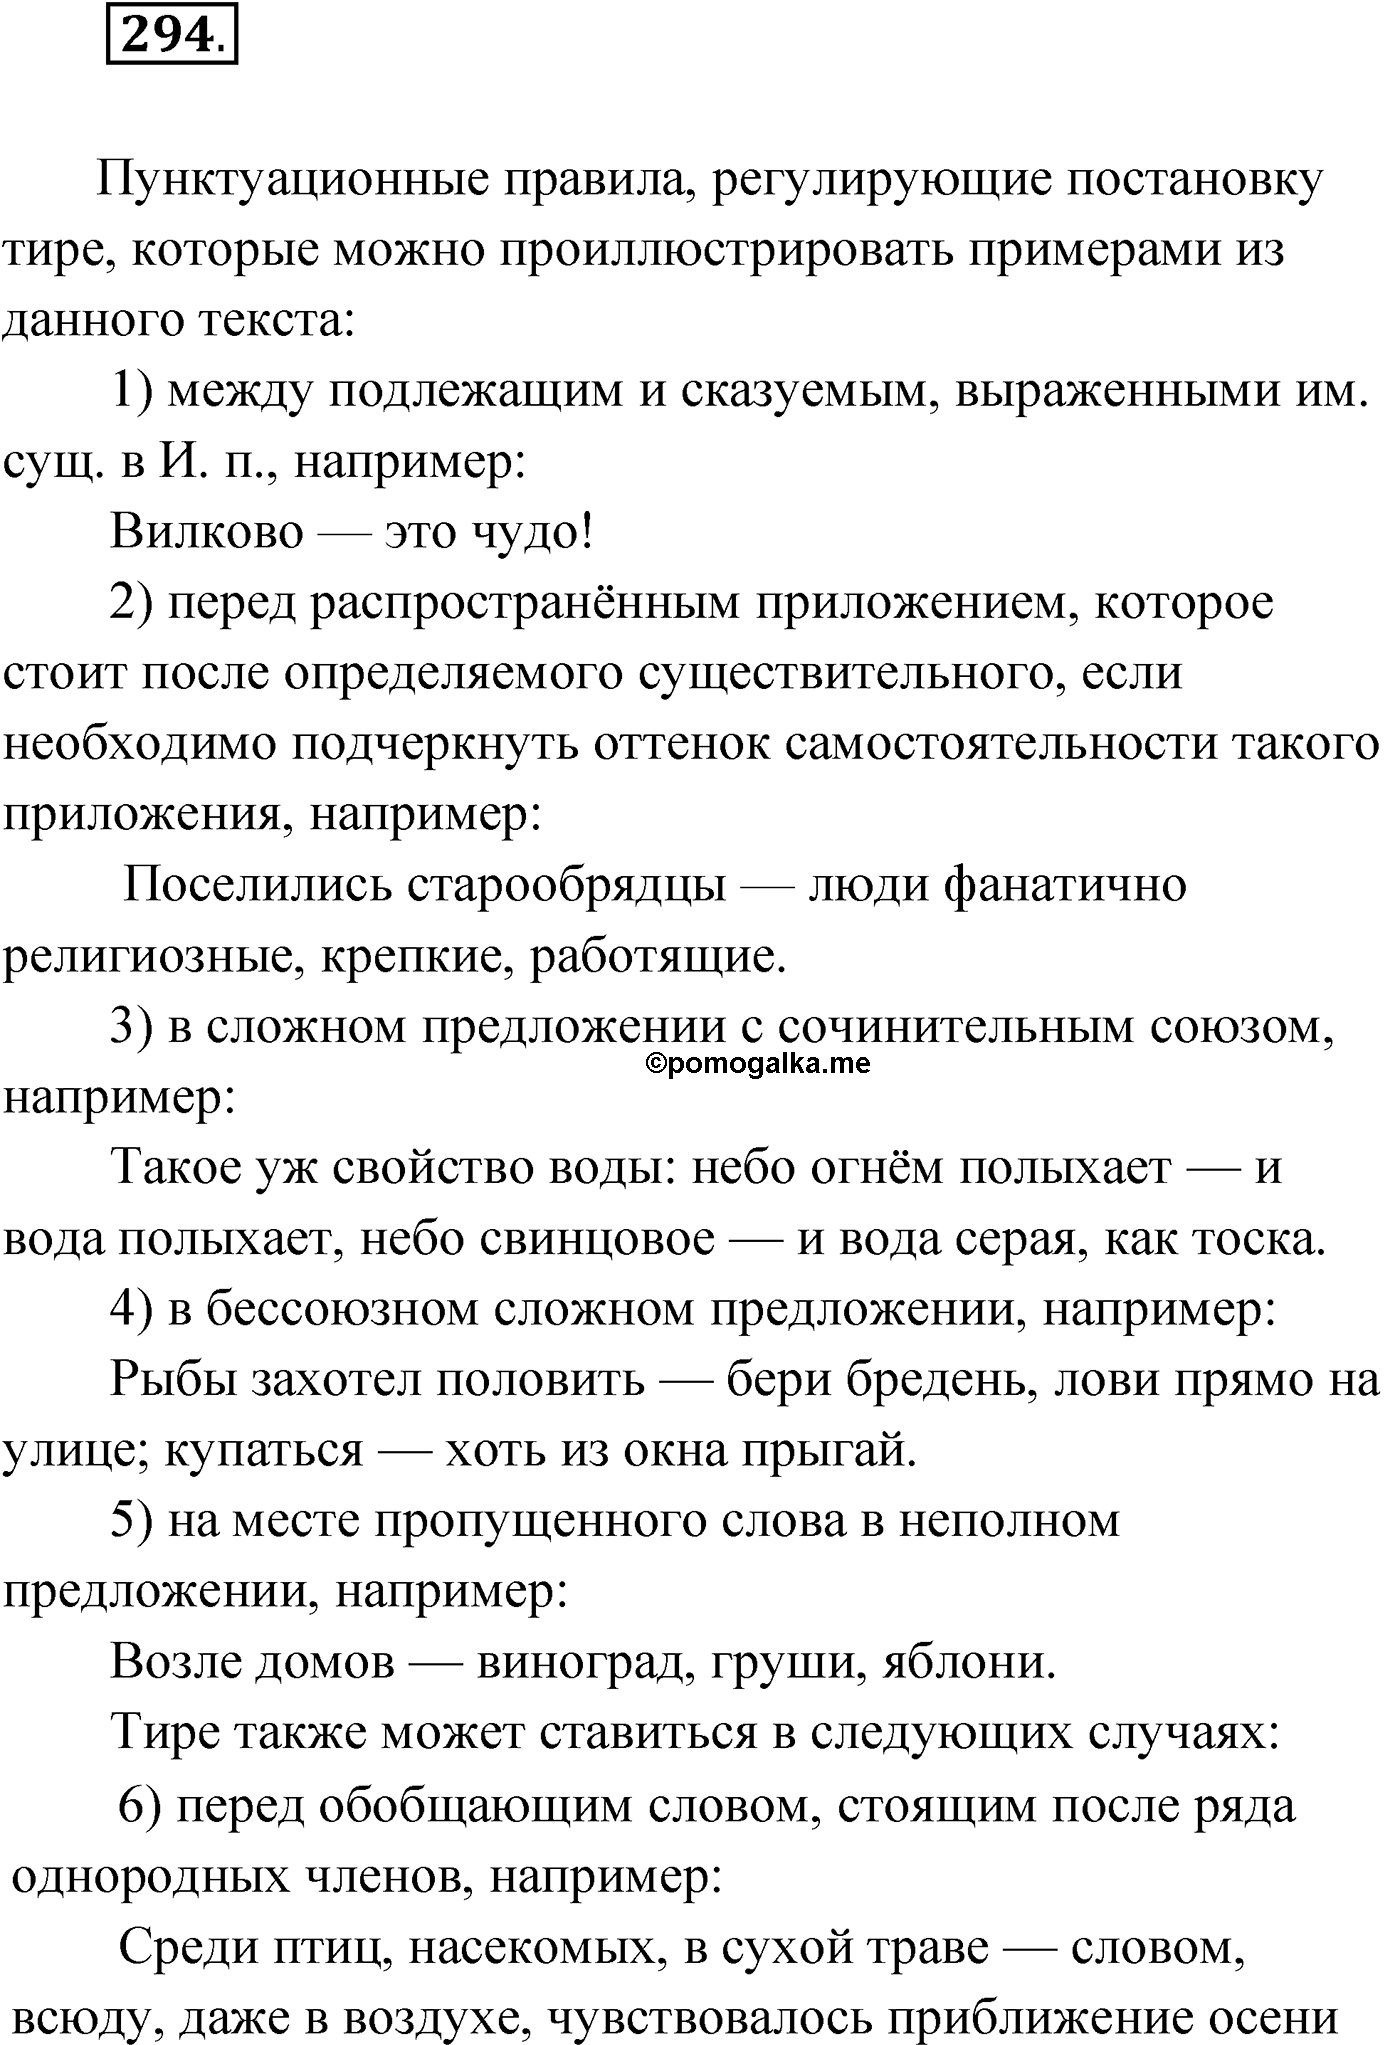 упражнение №294 русский язык 9 класс Мурина 2019 год